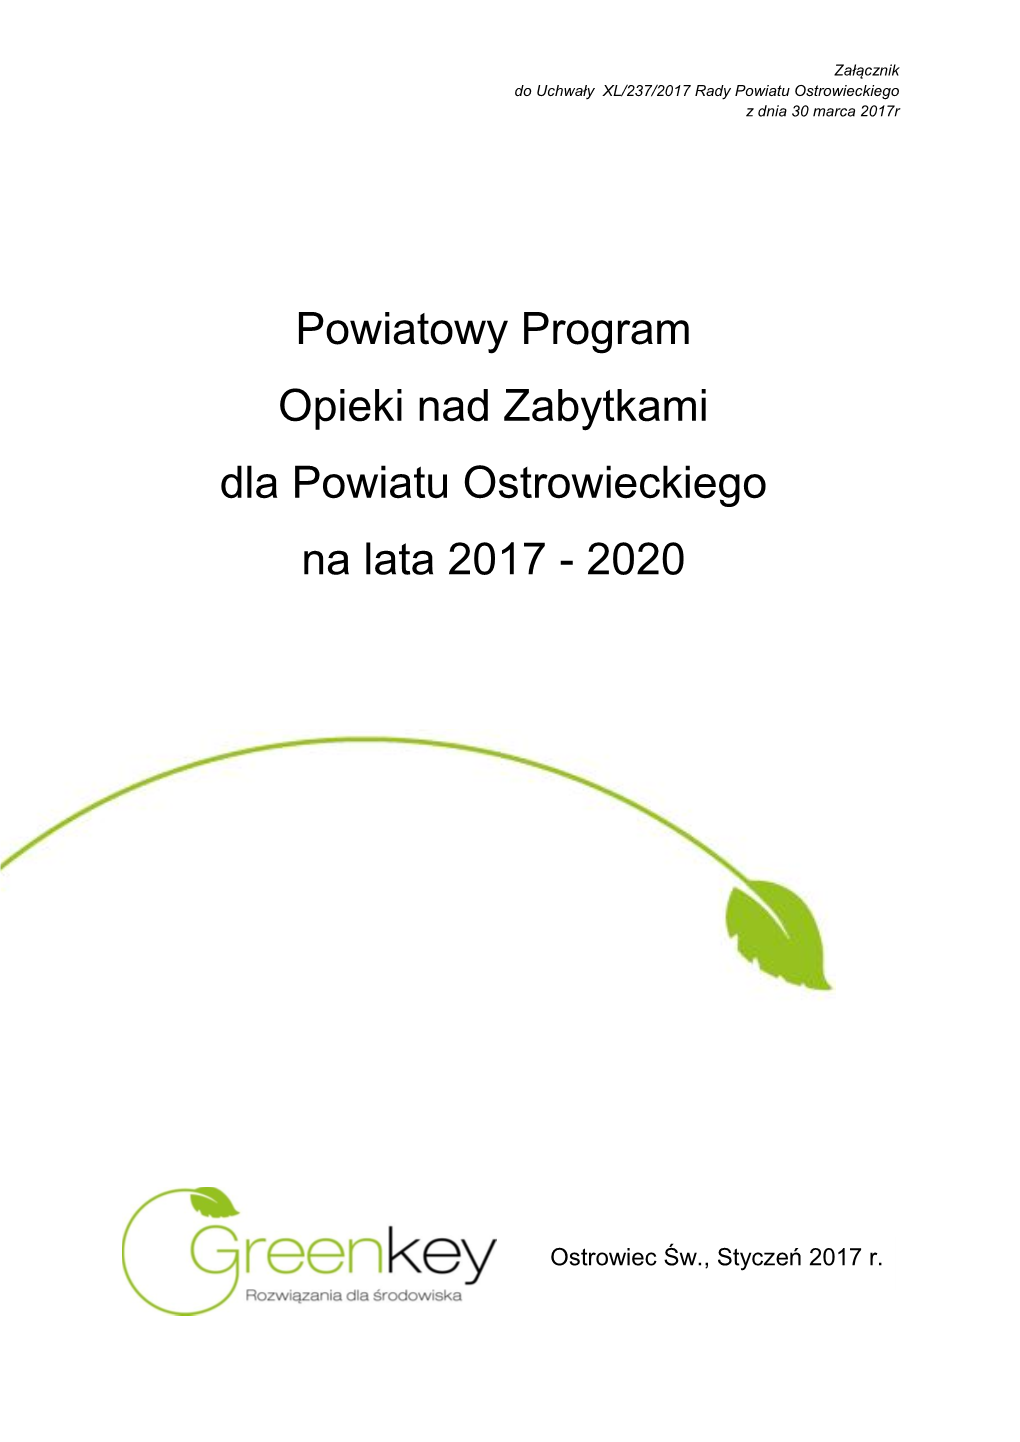 Pponz Pow.Ostrowiecki 2016-2019